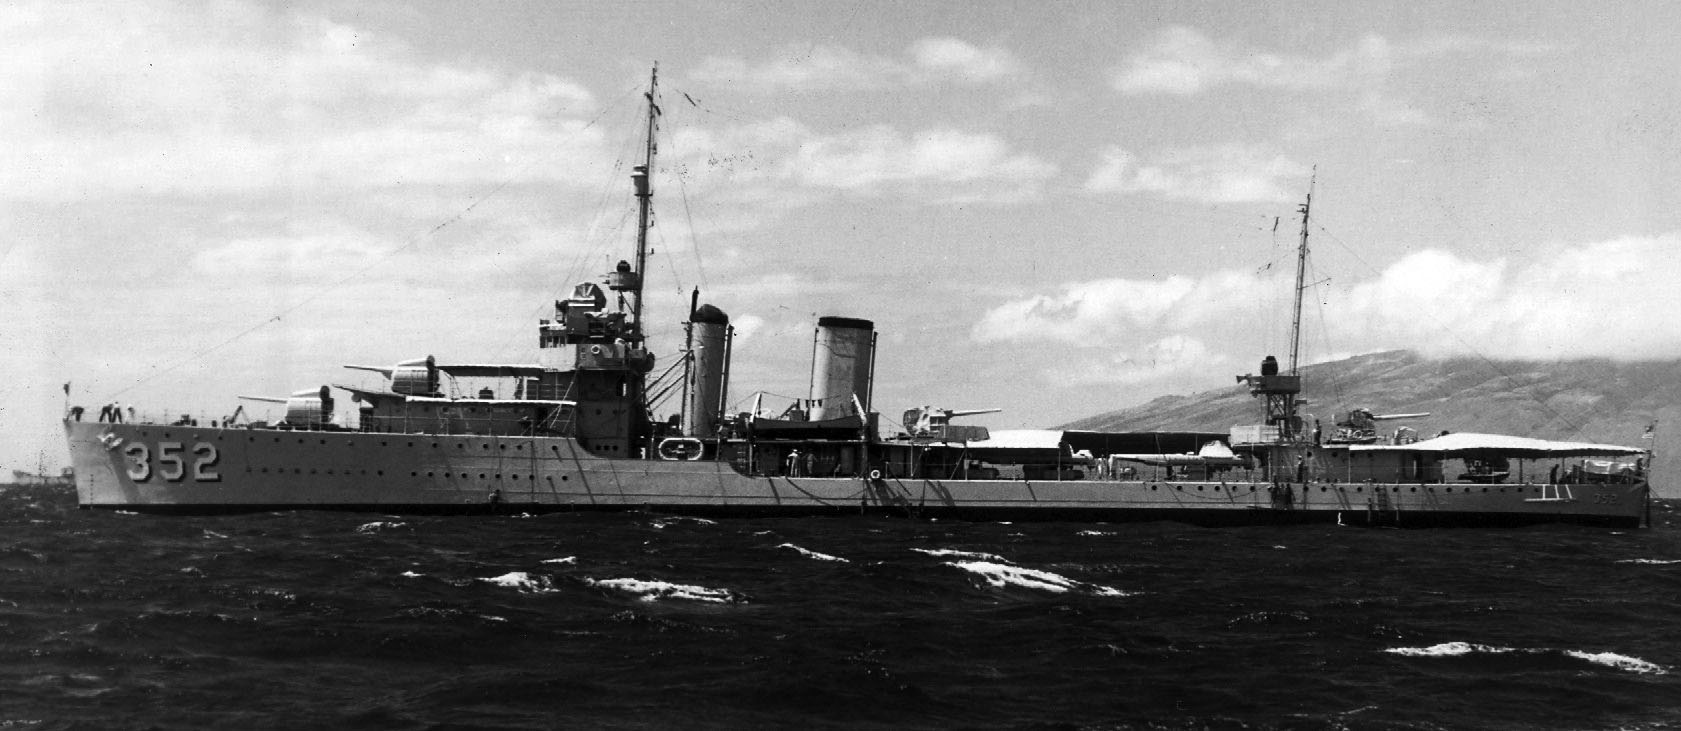 USS Worden (DD 352) in late 1930s